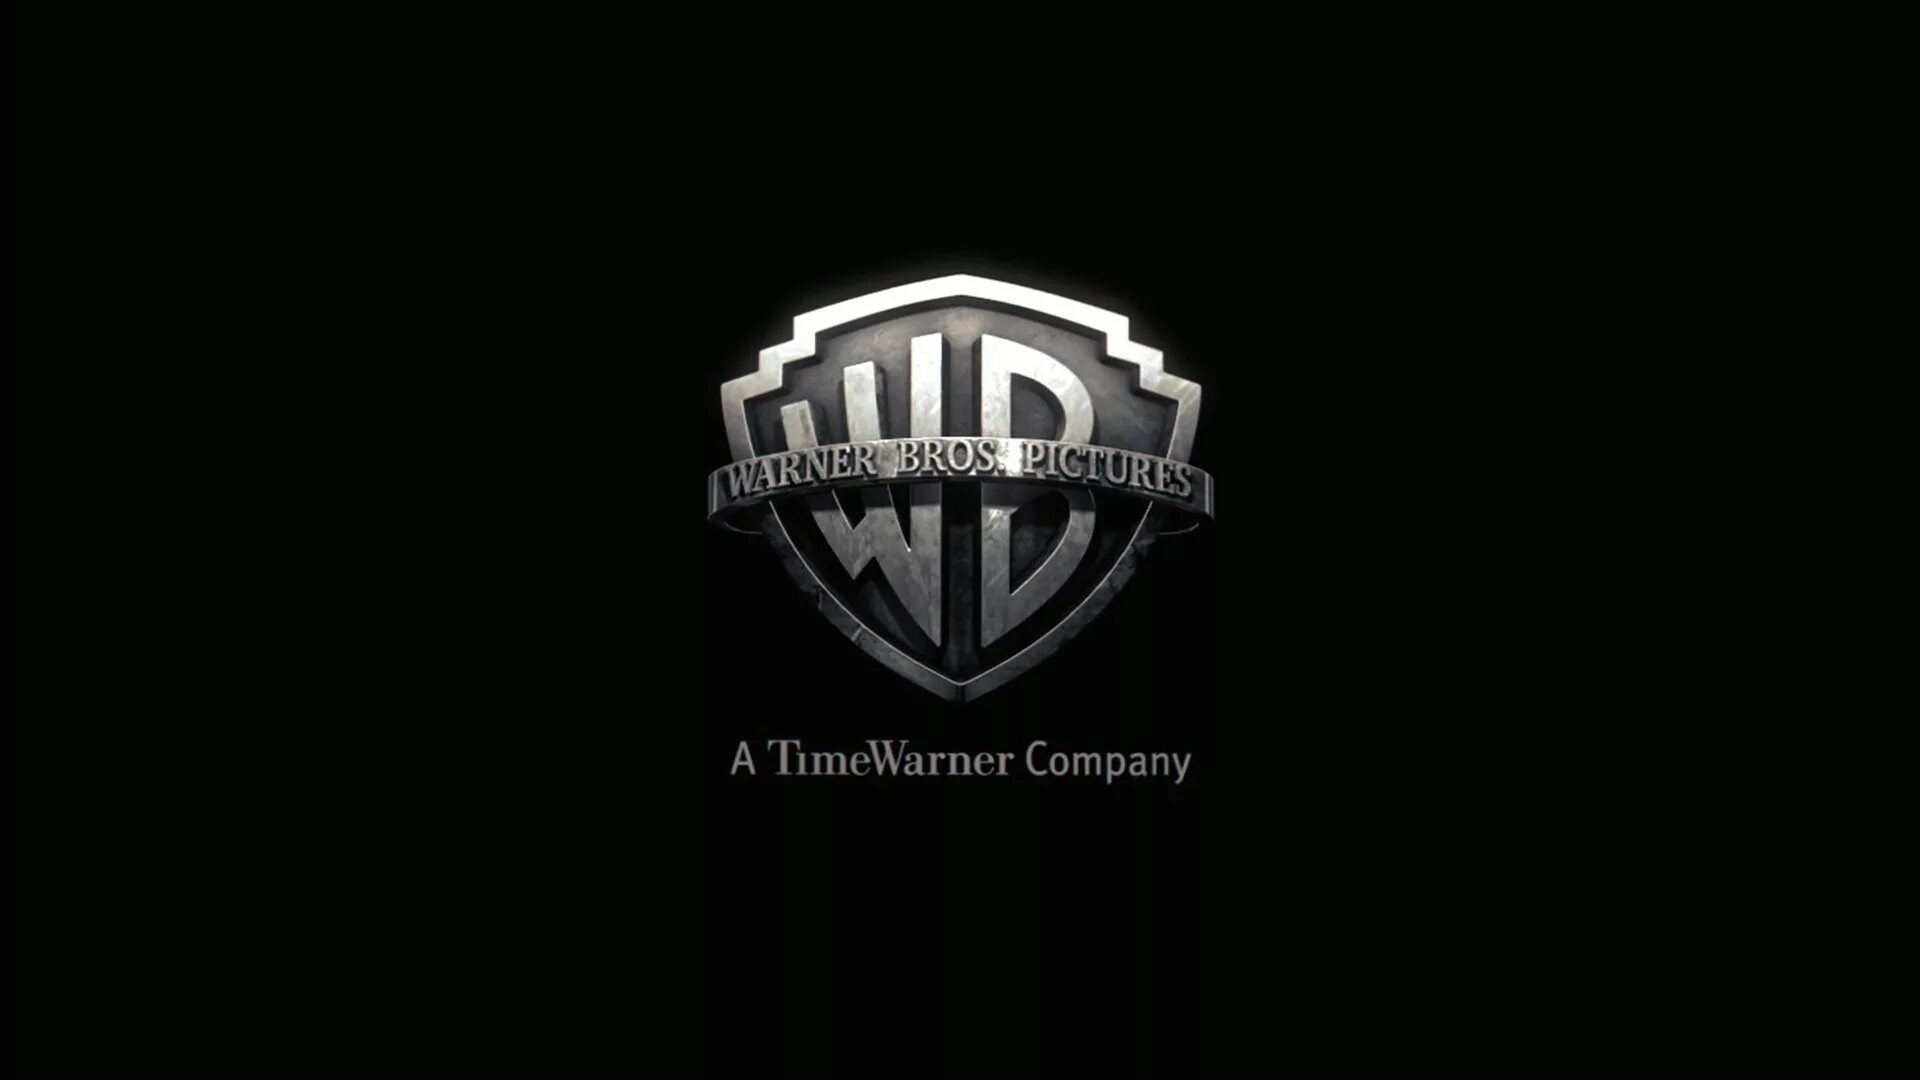 Варнер. Варнер БРОС логотип. Логотип кинокомпании Warner brothers. Уорнер бразерс Кинокомпания логотип. Заставка Warner brothers.